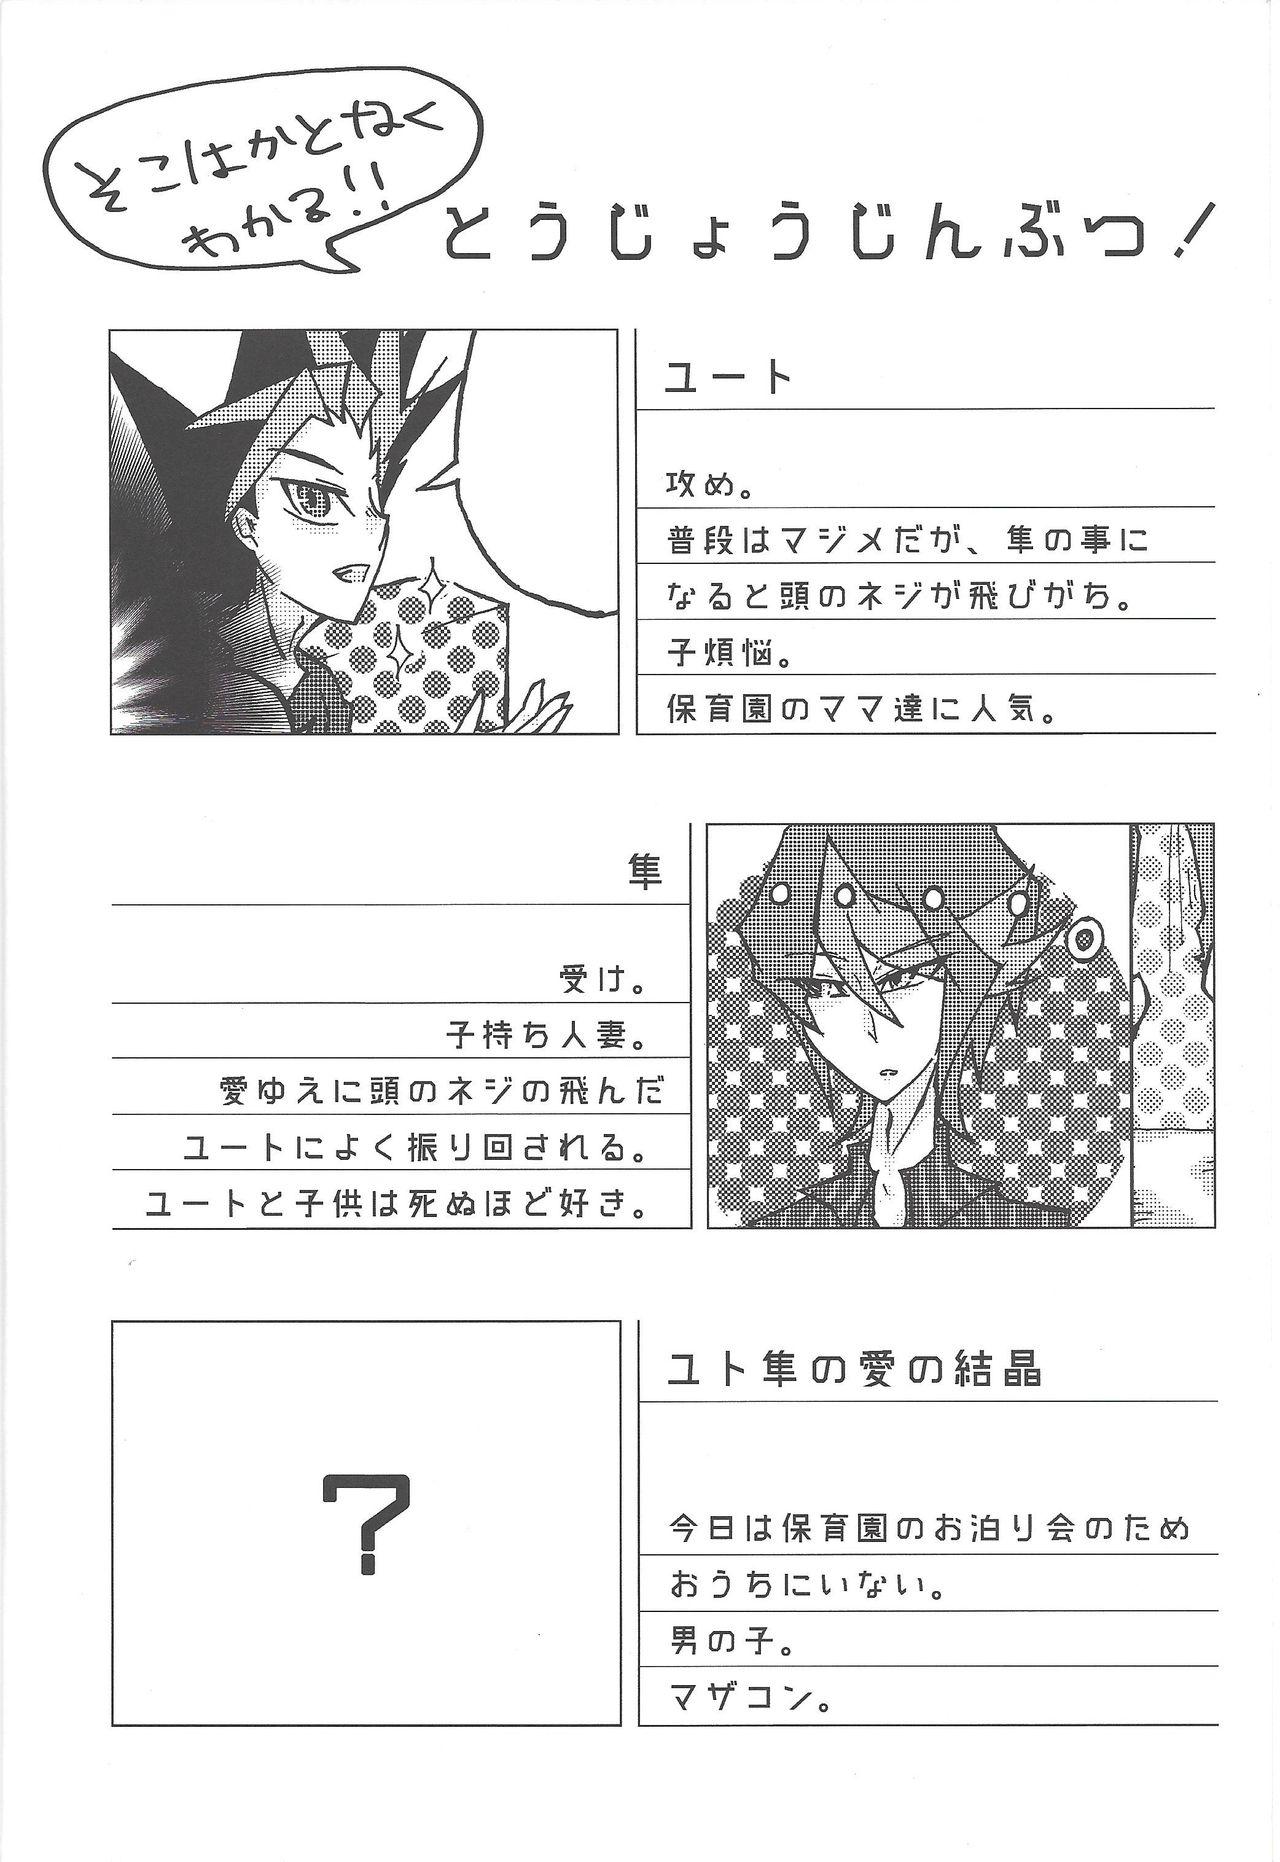 Tributo Kentaiki #moshikashite - Yu gi oh arc v Cdmx - Page 3